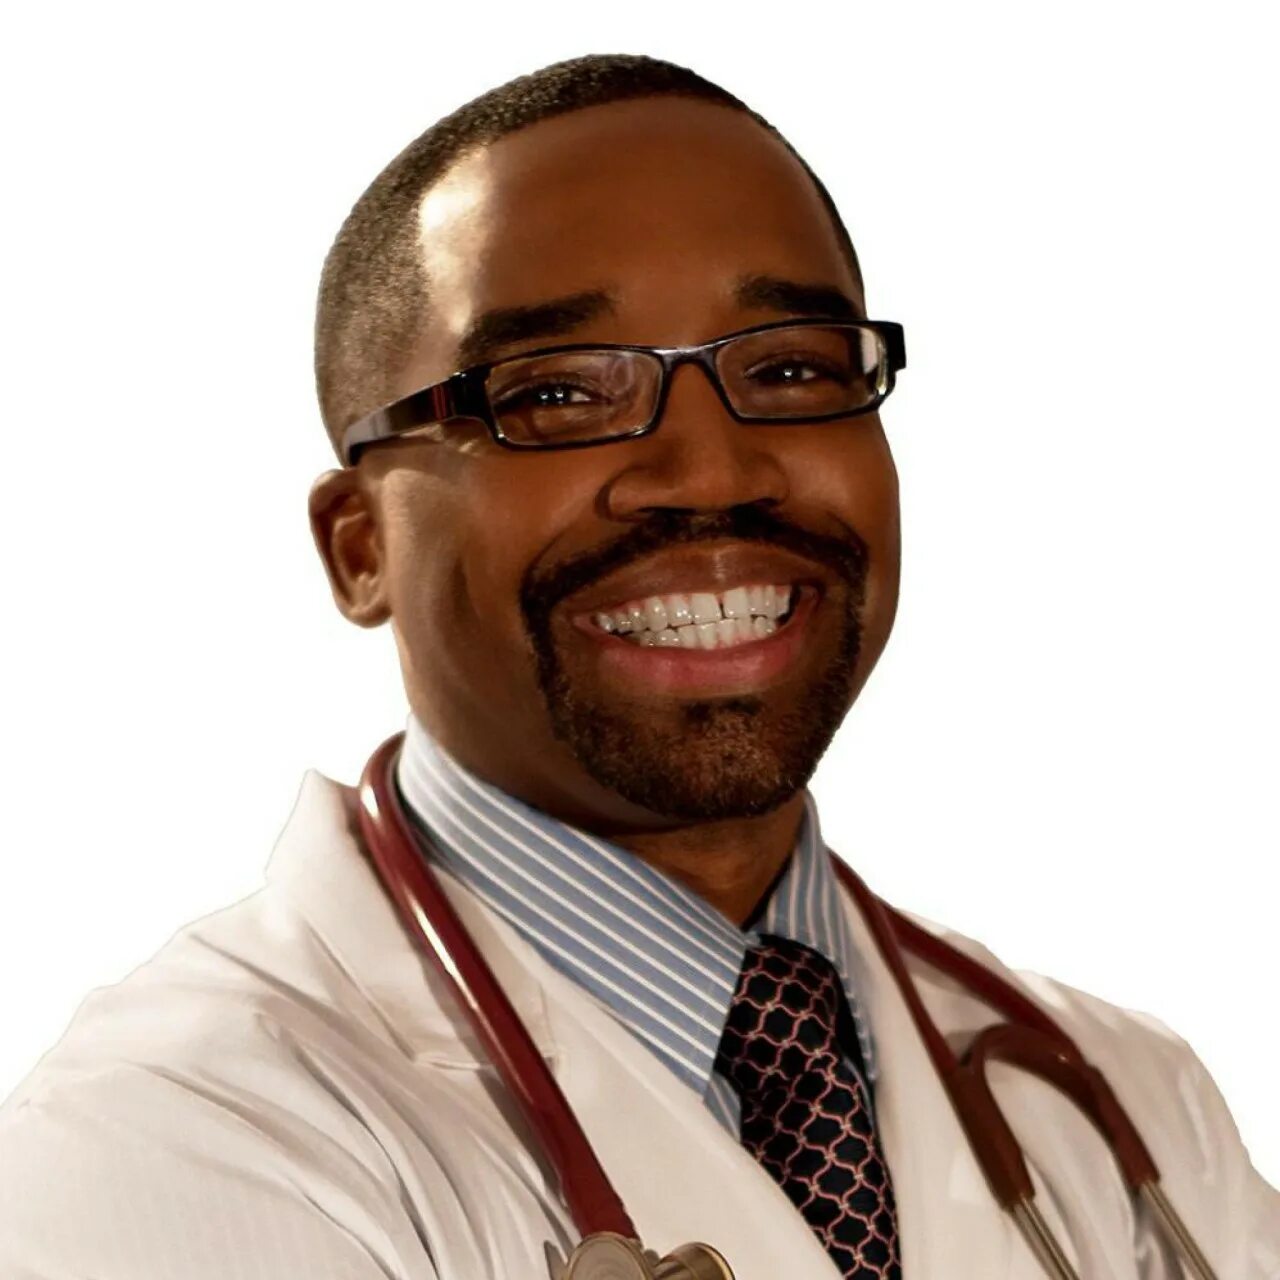 Doctor black. Черный врач. Темнокожий доктор. Доктор афроамериканец. Врач негр.